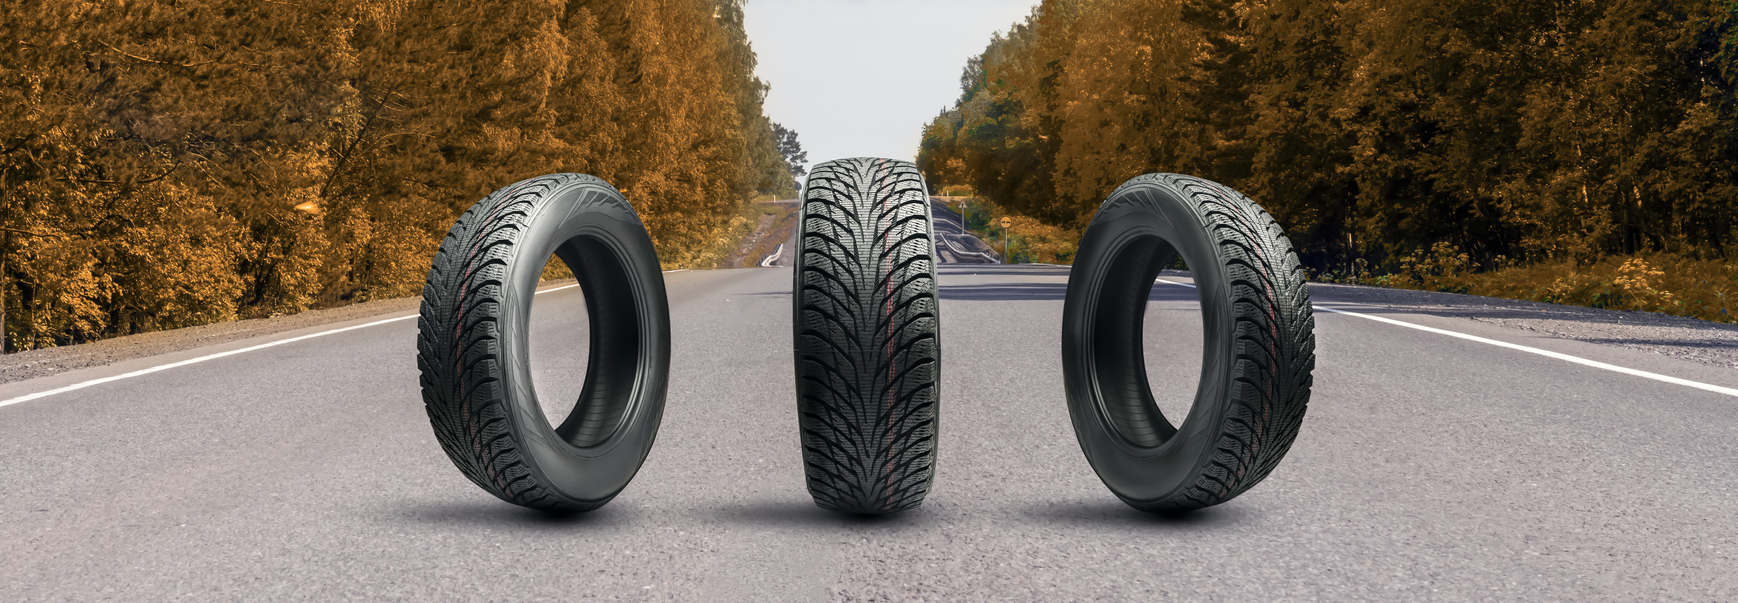 Quels sont les avantages des pneus Bridgestone 4 saisons ?